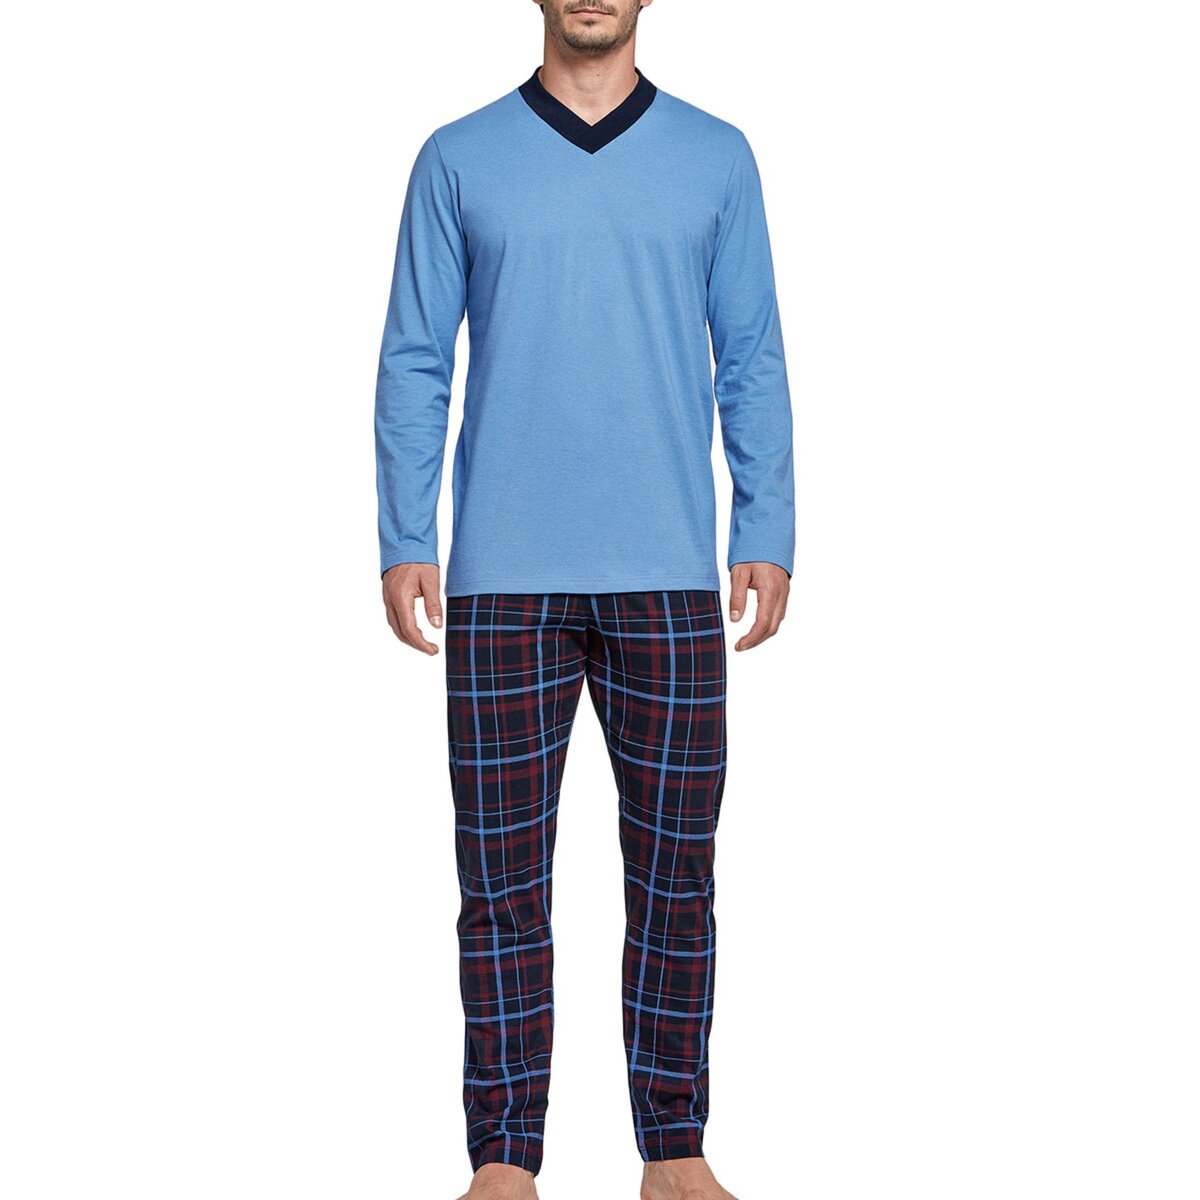  Pyjama homme en coton Deer bleu